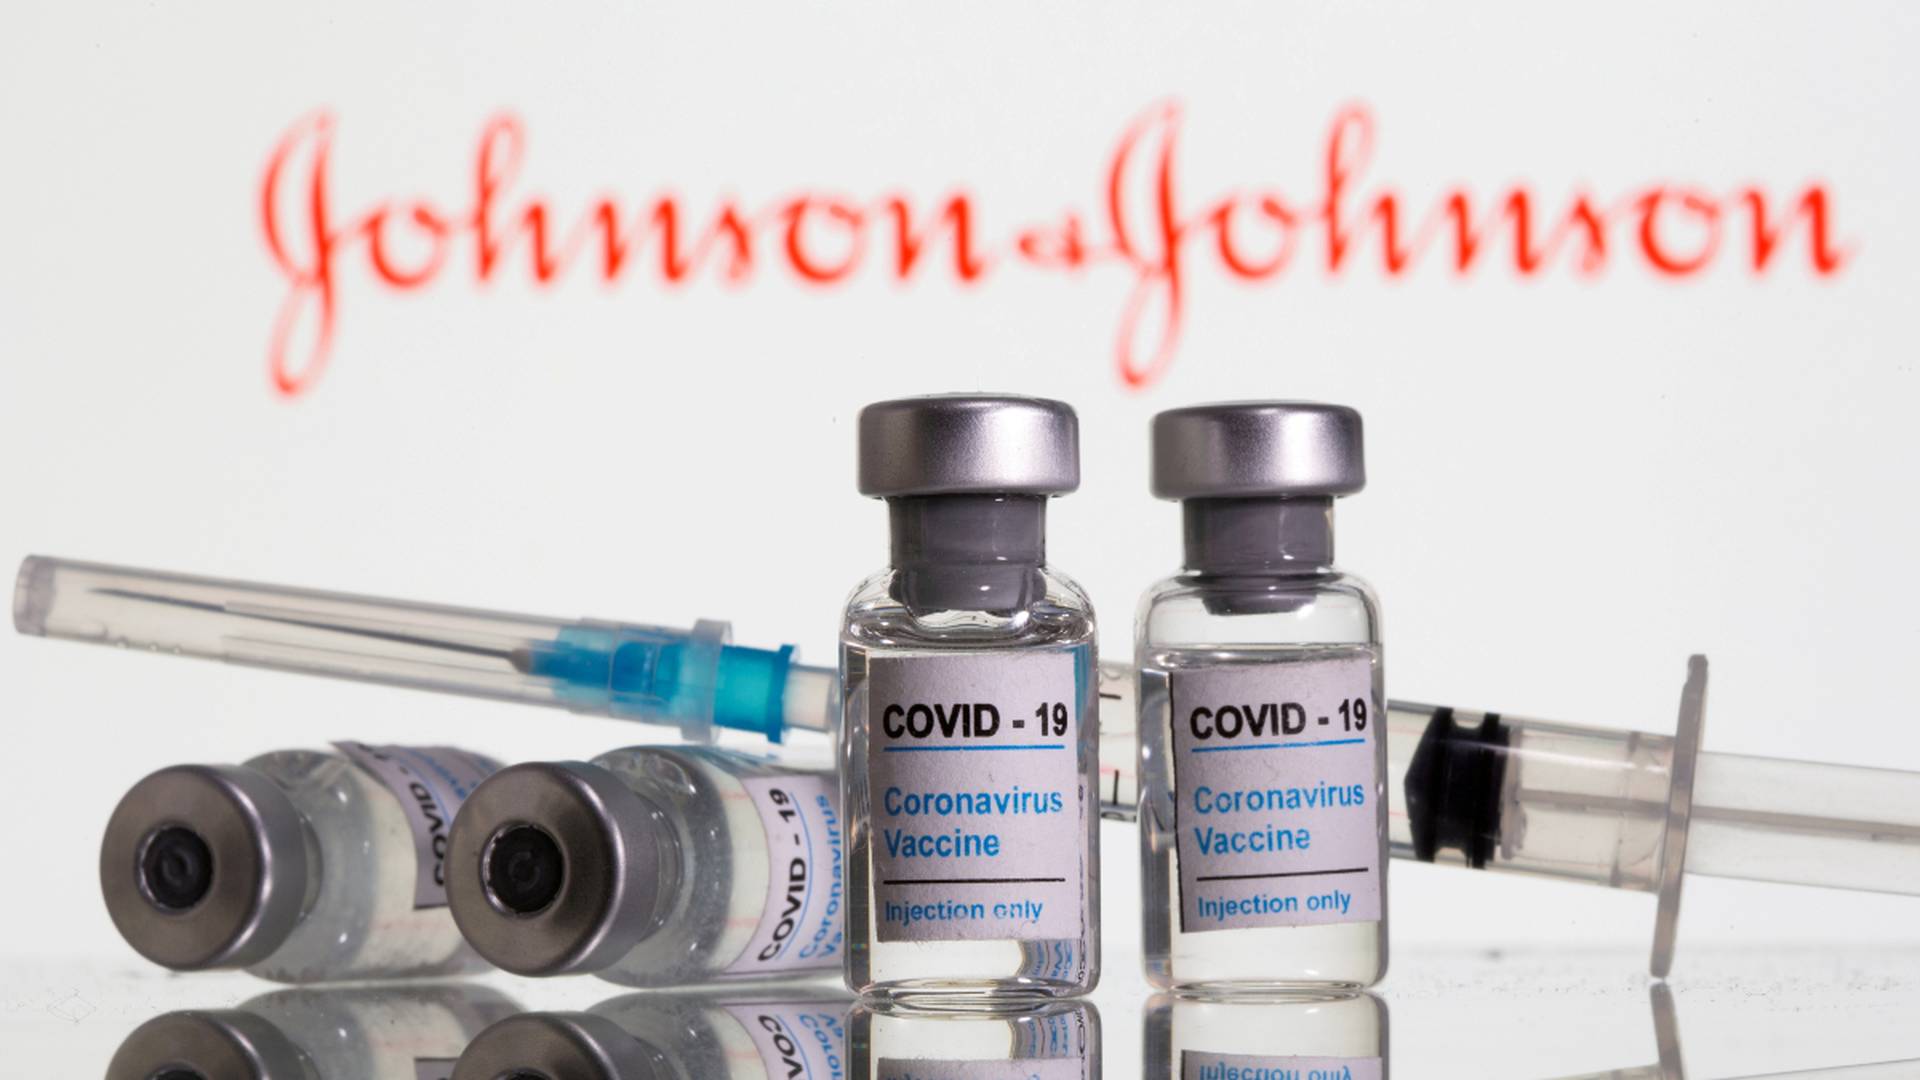 強生以供應過剩為由暫停發布全年新冠疫苗銷售額預期